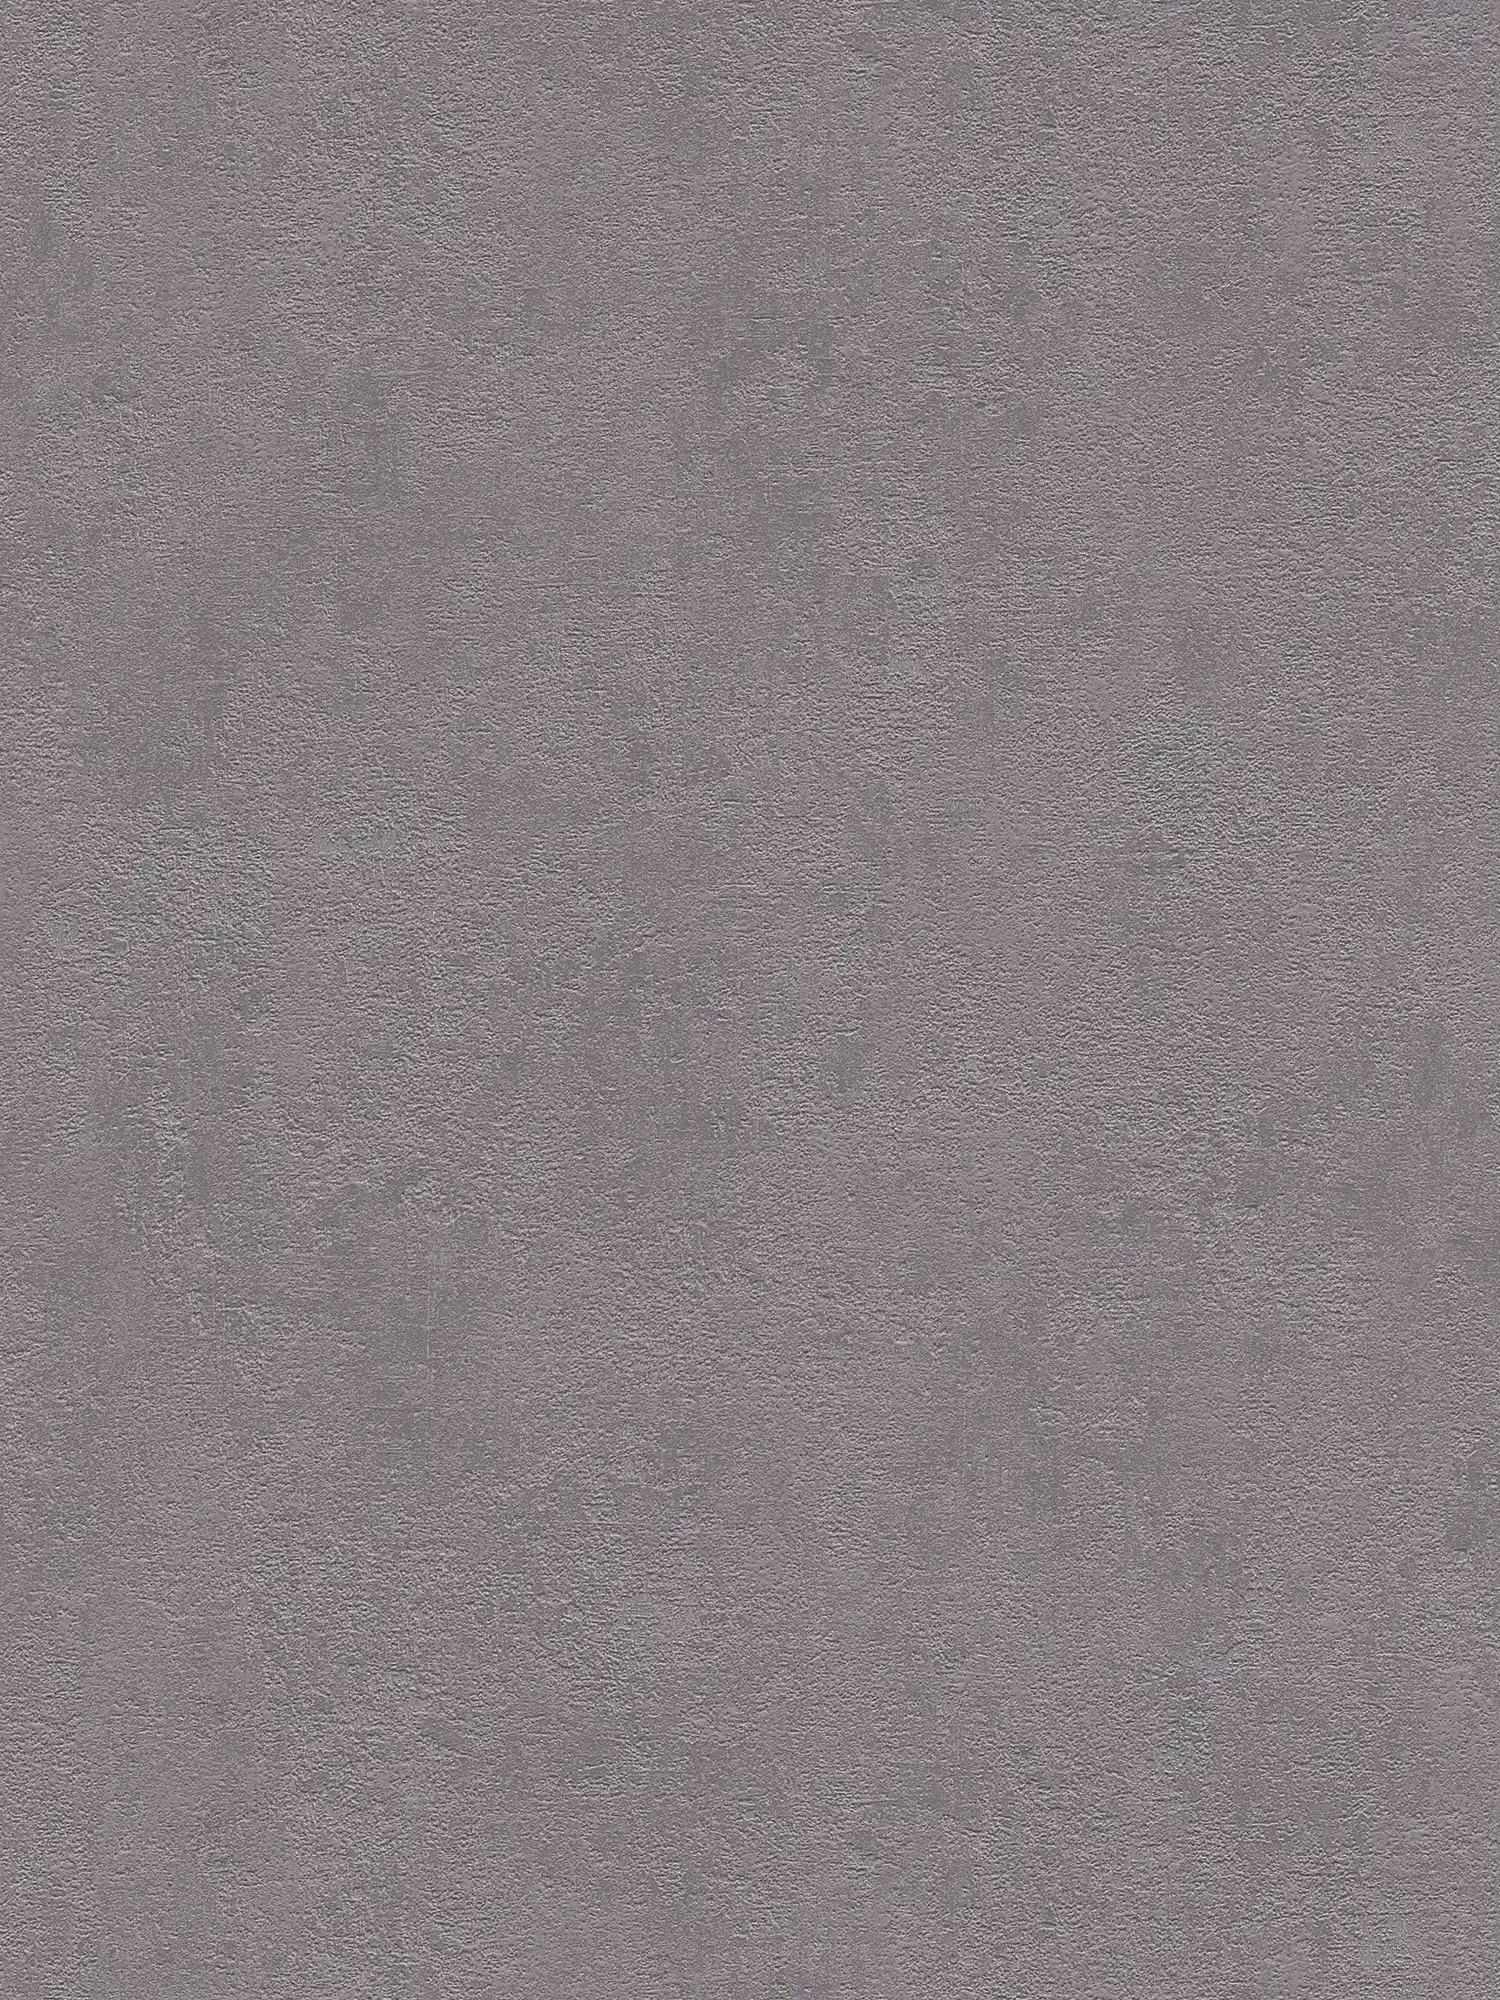             papel pintado estructura de yeso, liso y satinado - gris oscuro
        